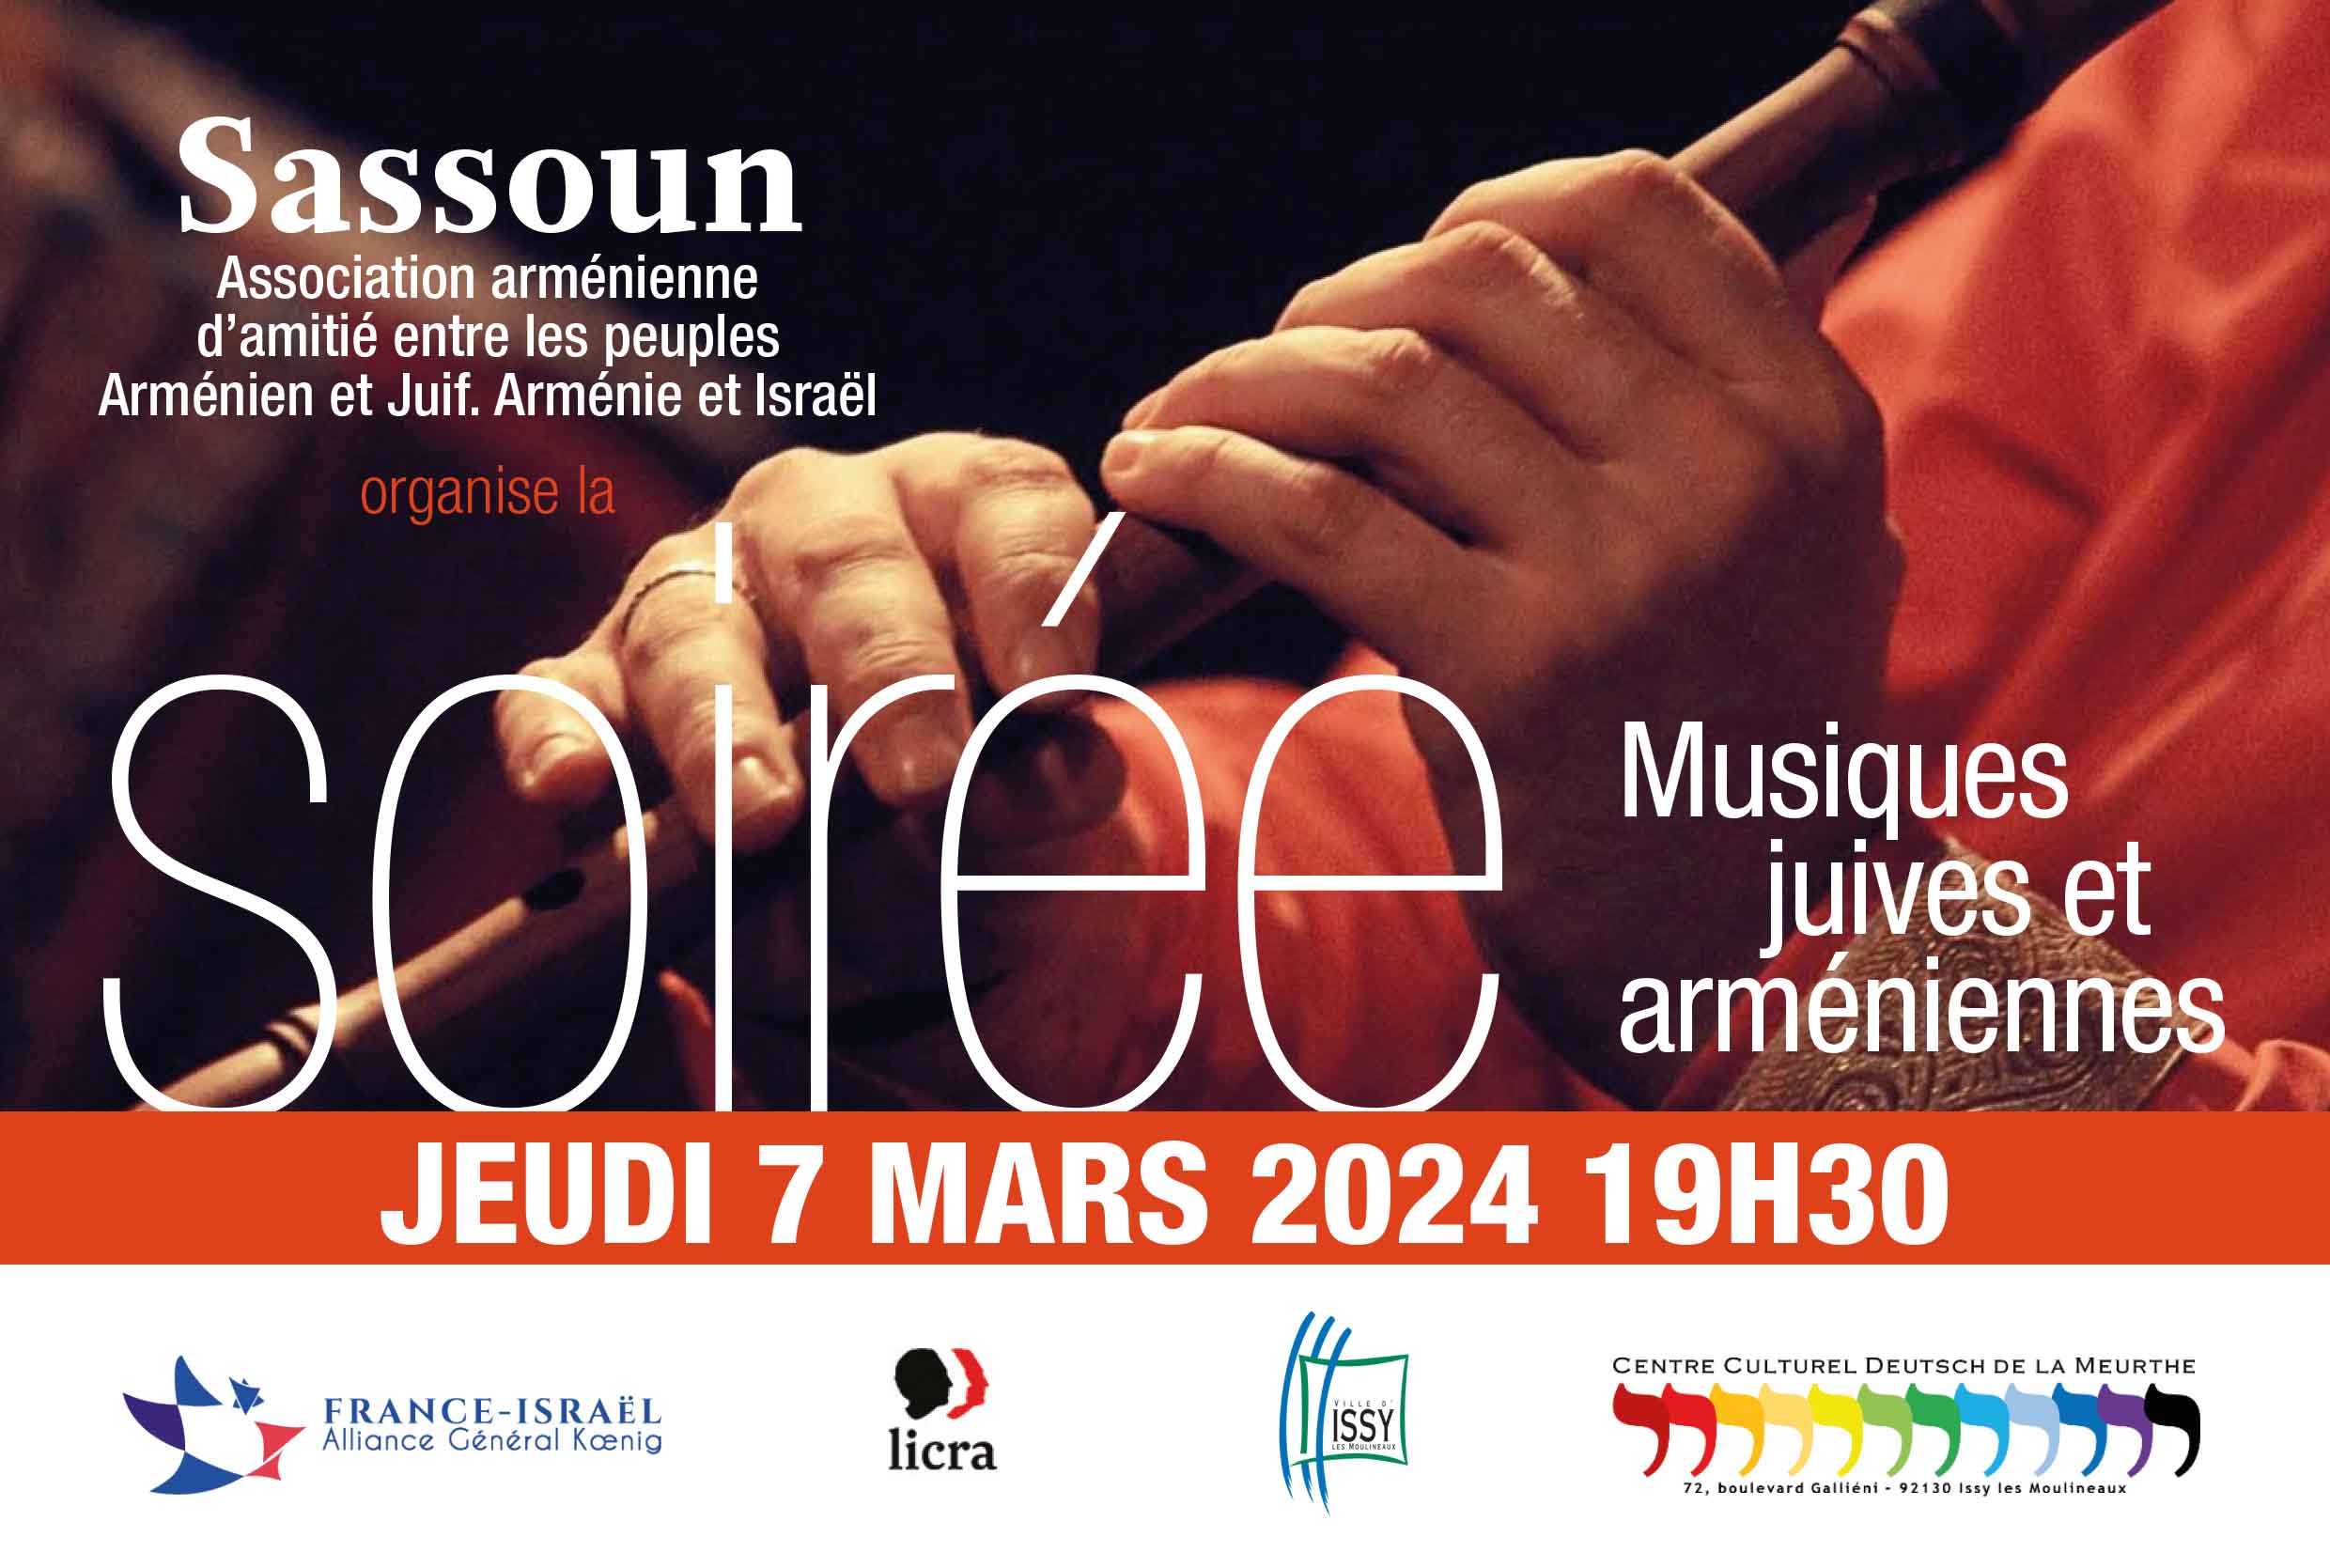 Musiques judéo-arméniennes à Issy-les-Moulineaux, 7 mars 2024, à l'initiative de Sassoun et de l'Association France-Israël